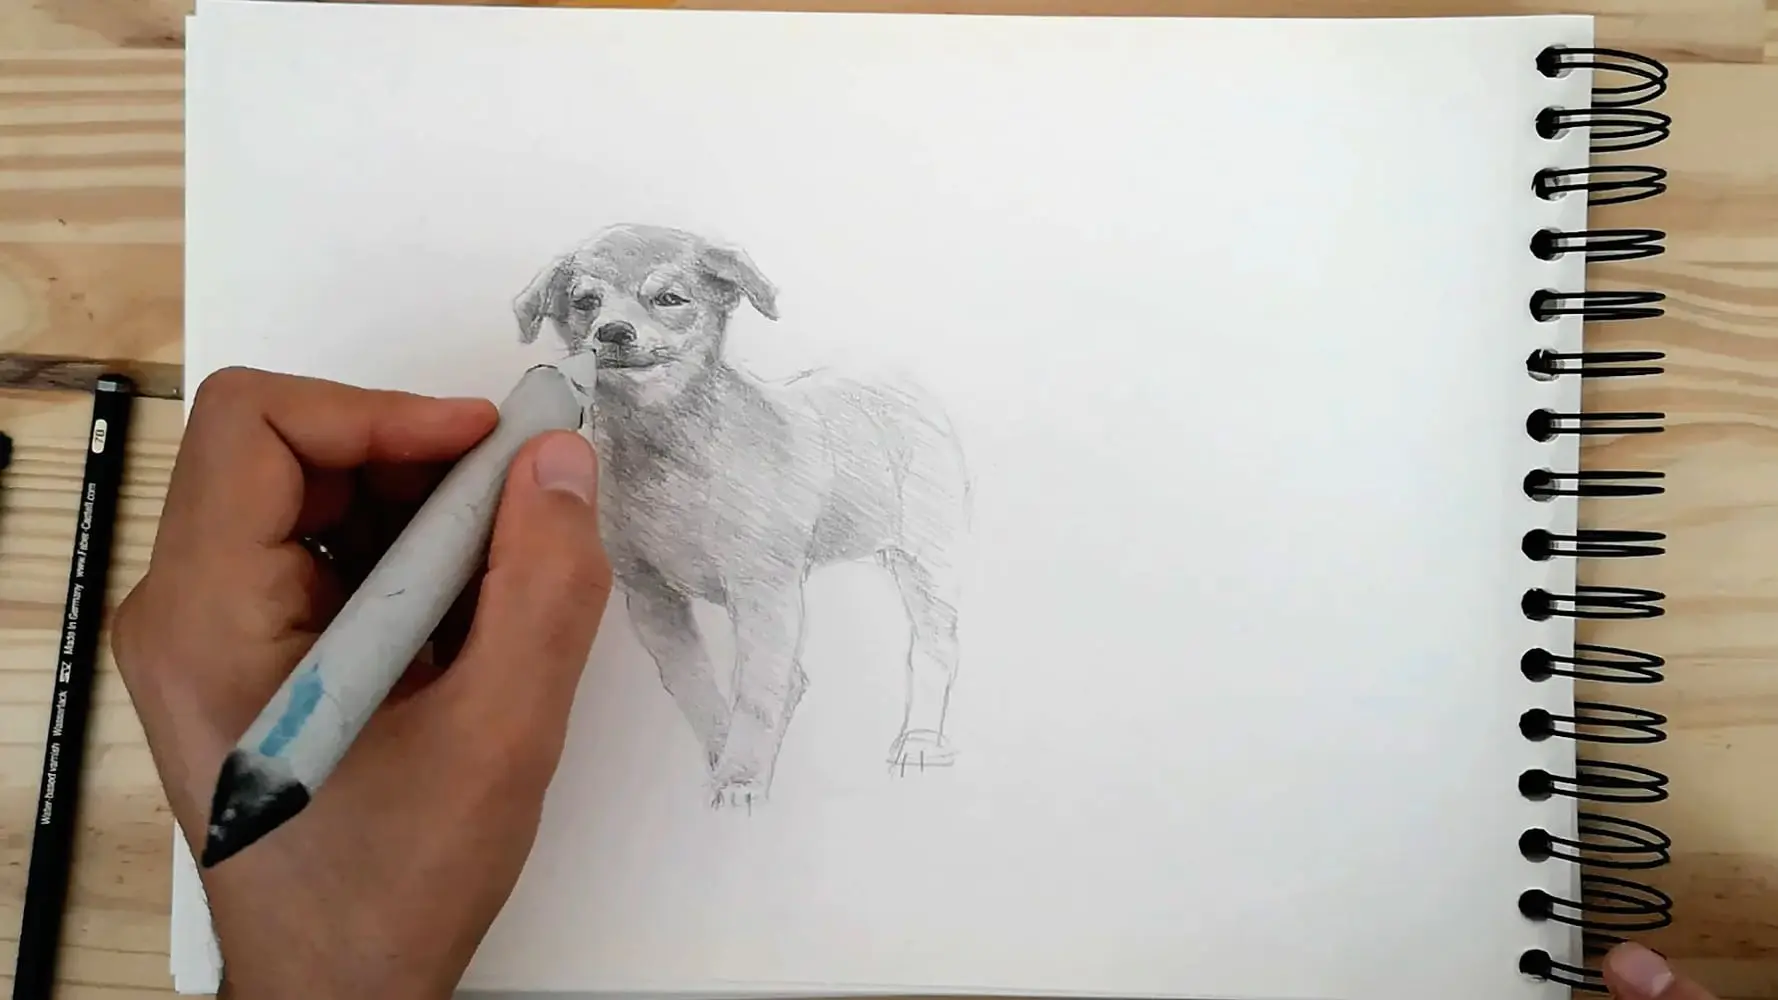 comment dessiner un chien